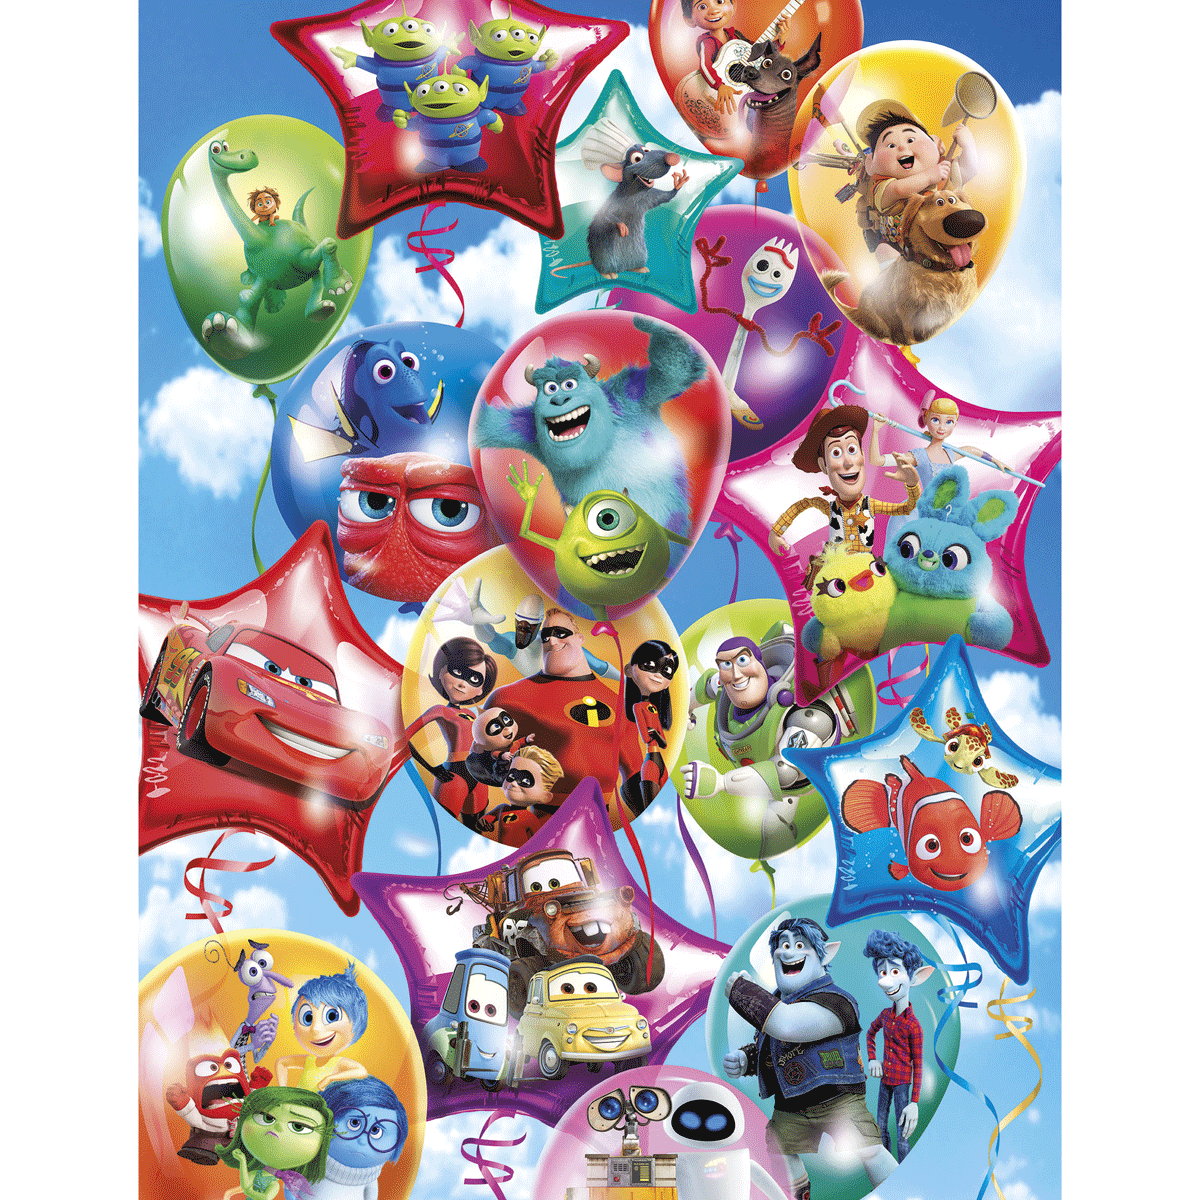 Clementoni supercolor puzzle pixar party - 104 pezzi, puzzle bambini 6 anni - CLEMENTONI